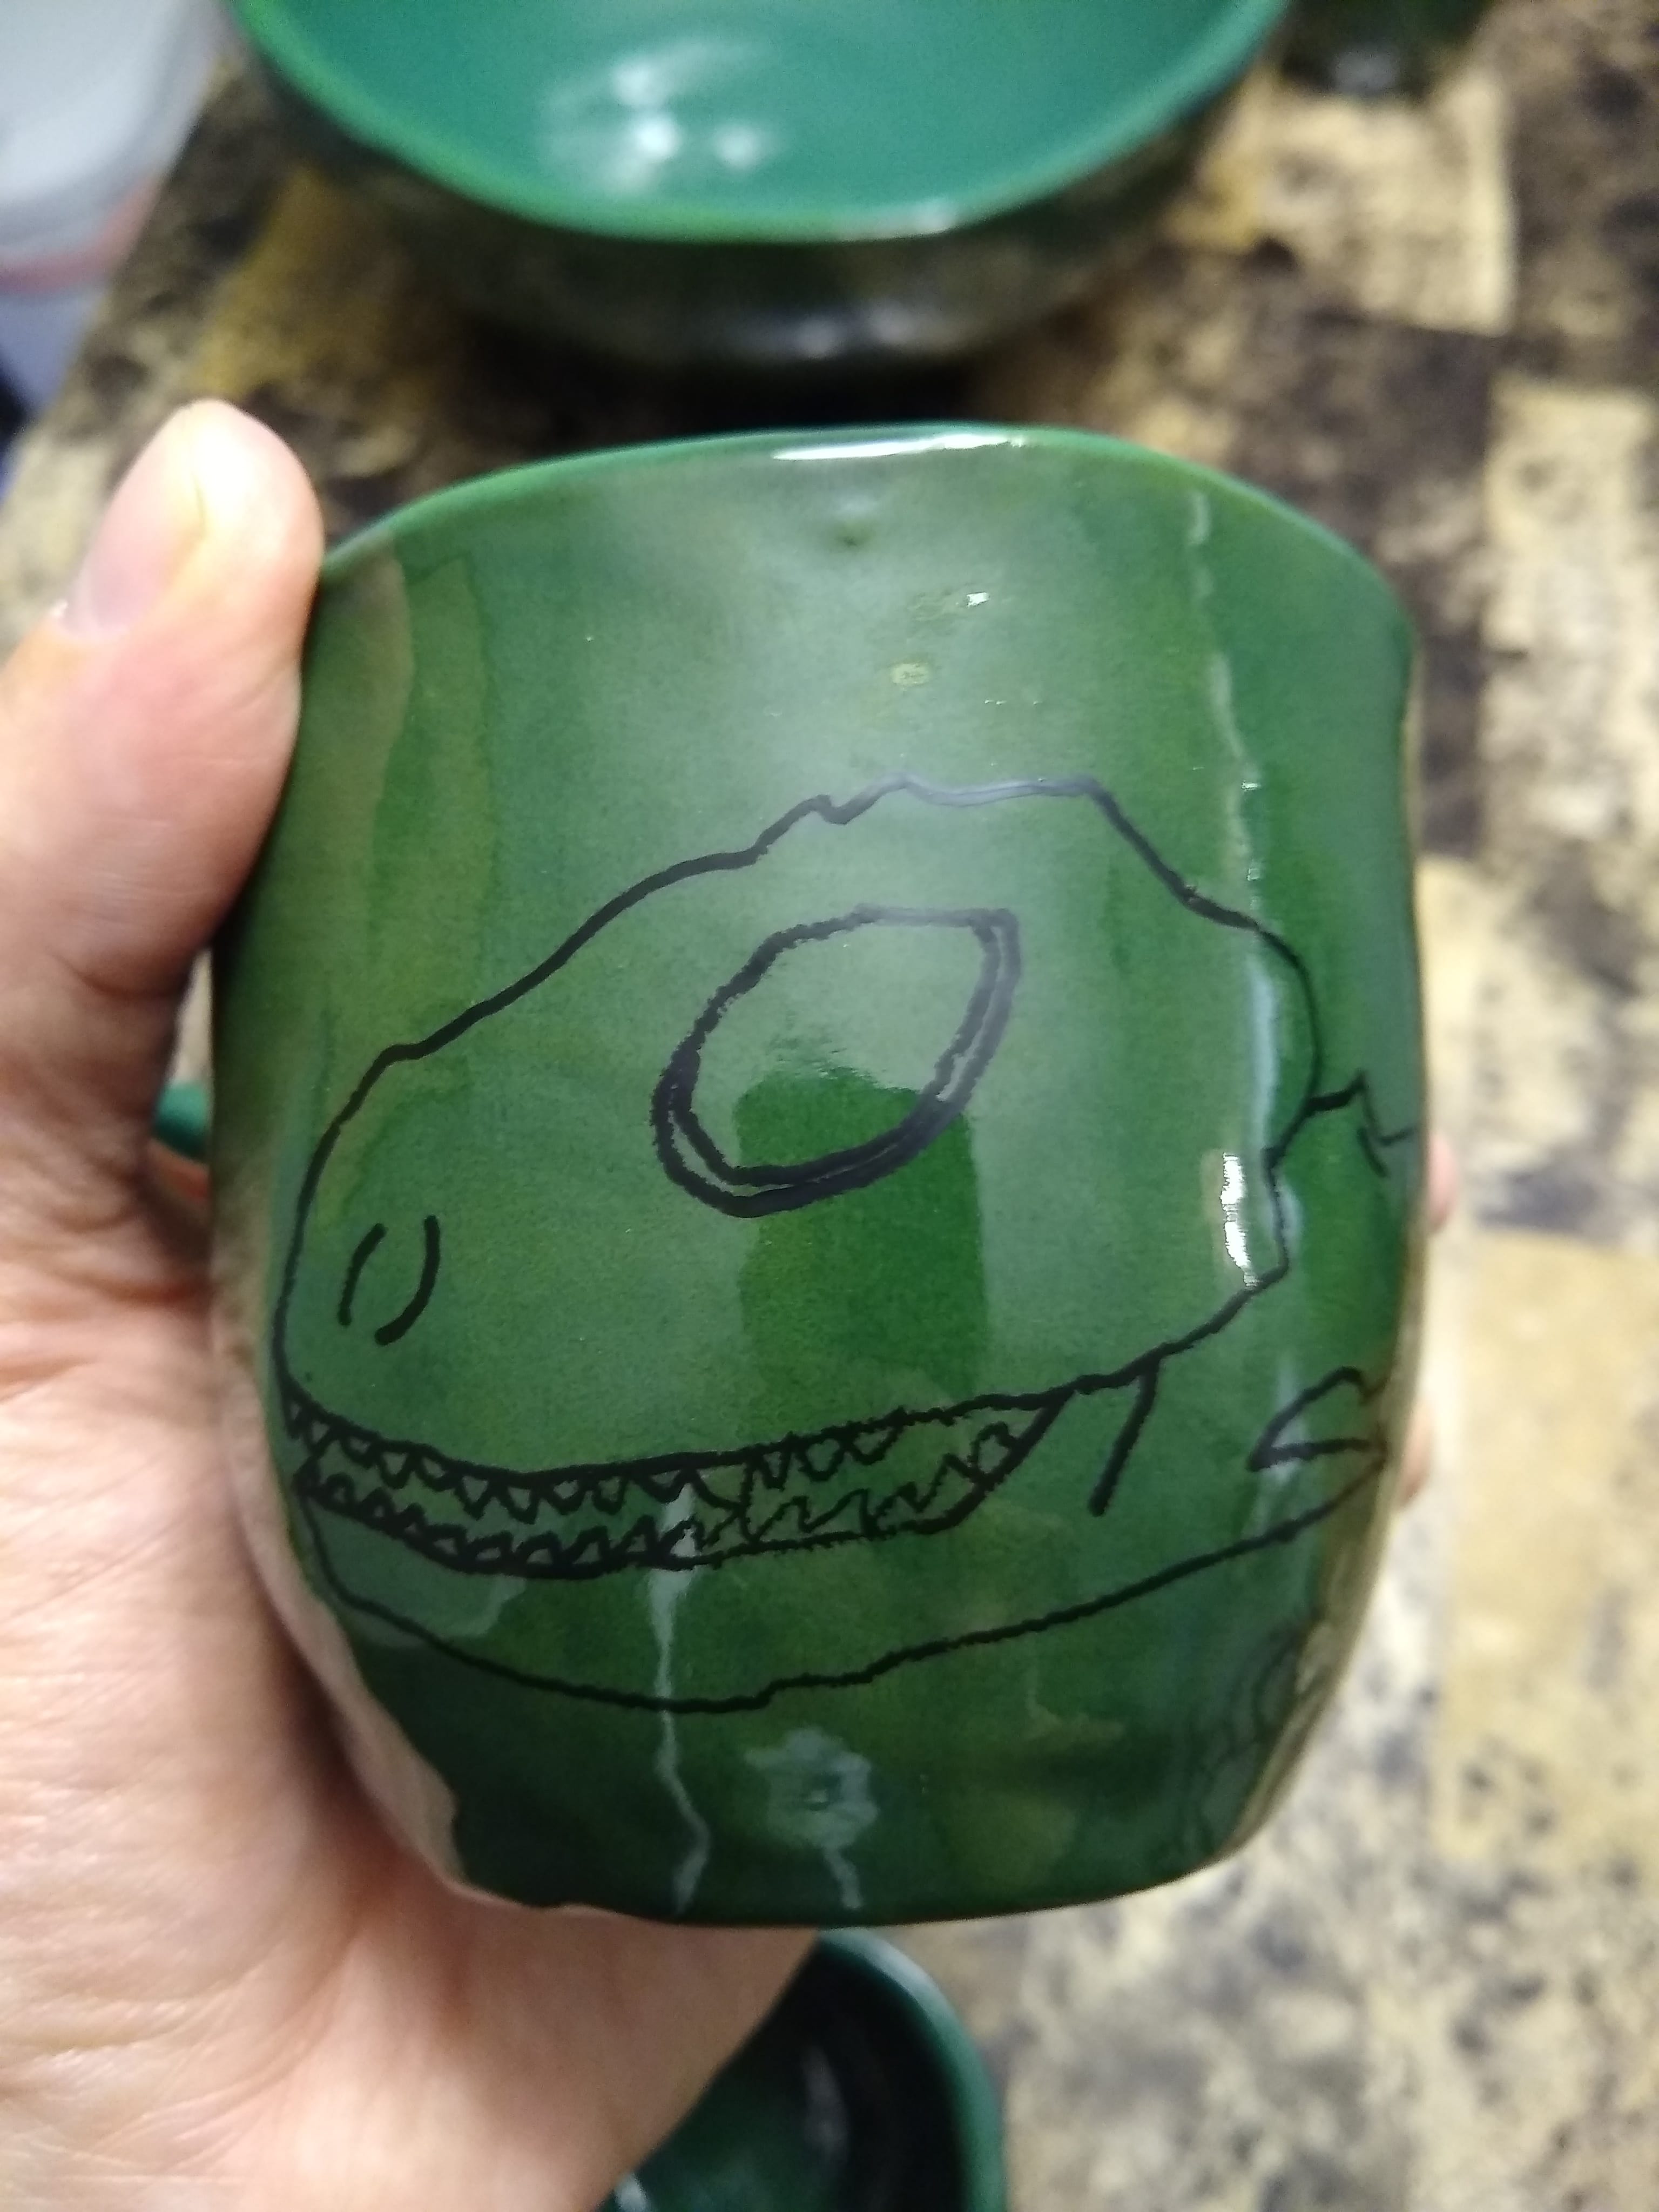 mug with iguana skull drawn on it